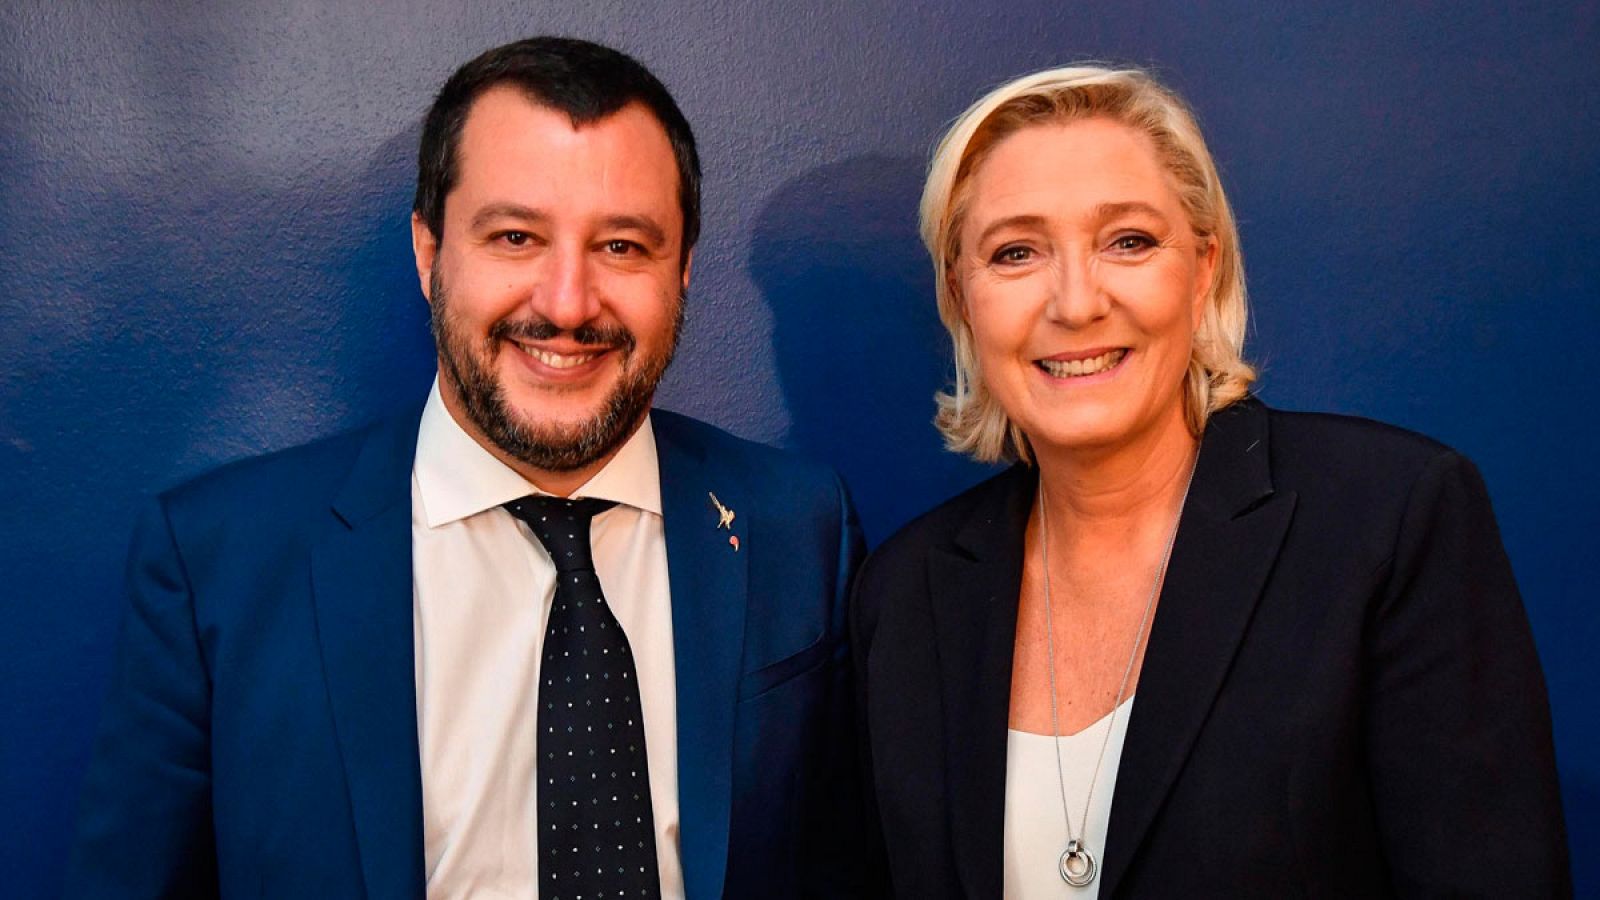 El vicepresidente iraliano y líder de la Liga, Matteo Salvini, con la ultraderechista francesa Marine Le Pen en 2018